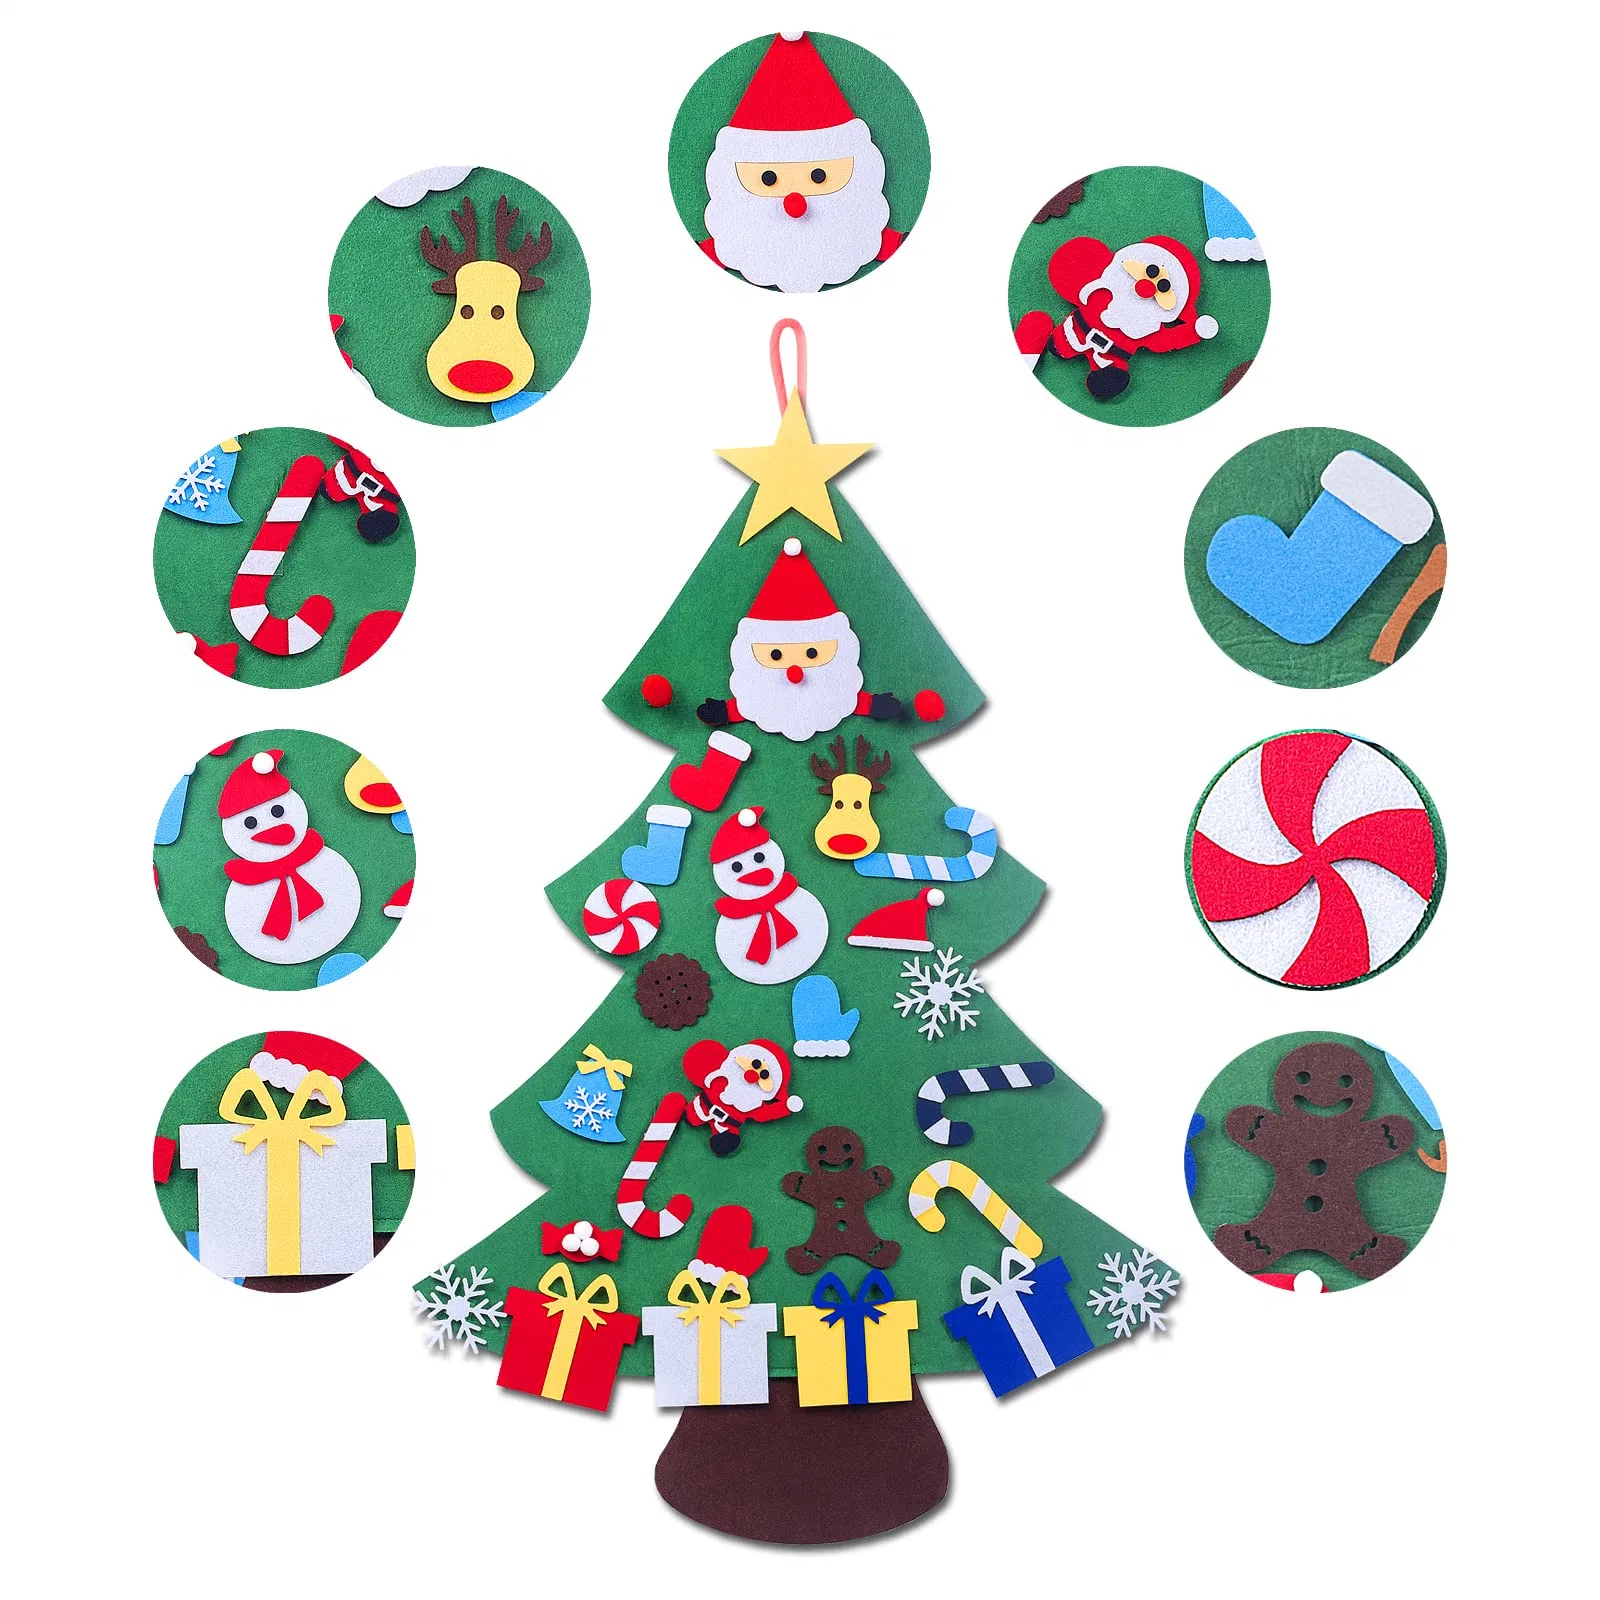 الديكور عالي الكثافة شعر شجرة عيد الميلاد مع حامل وأكسسوارات